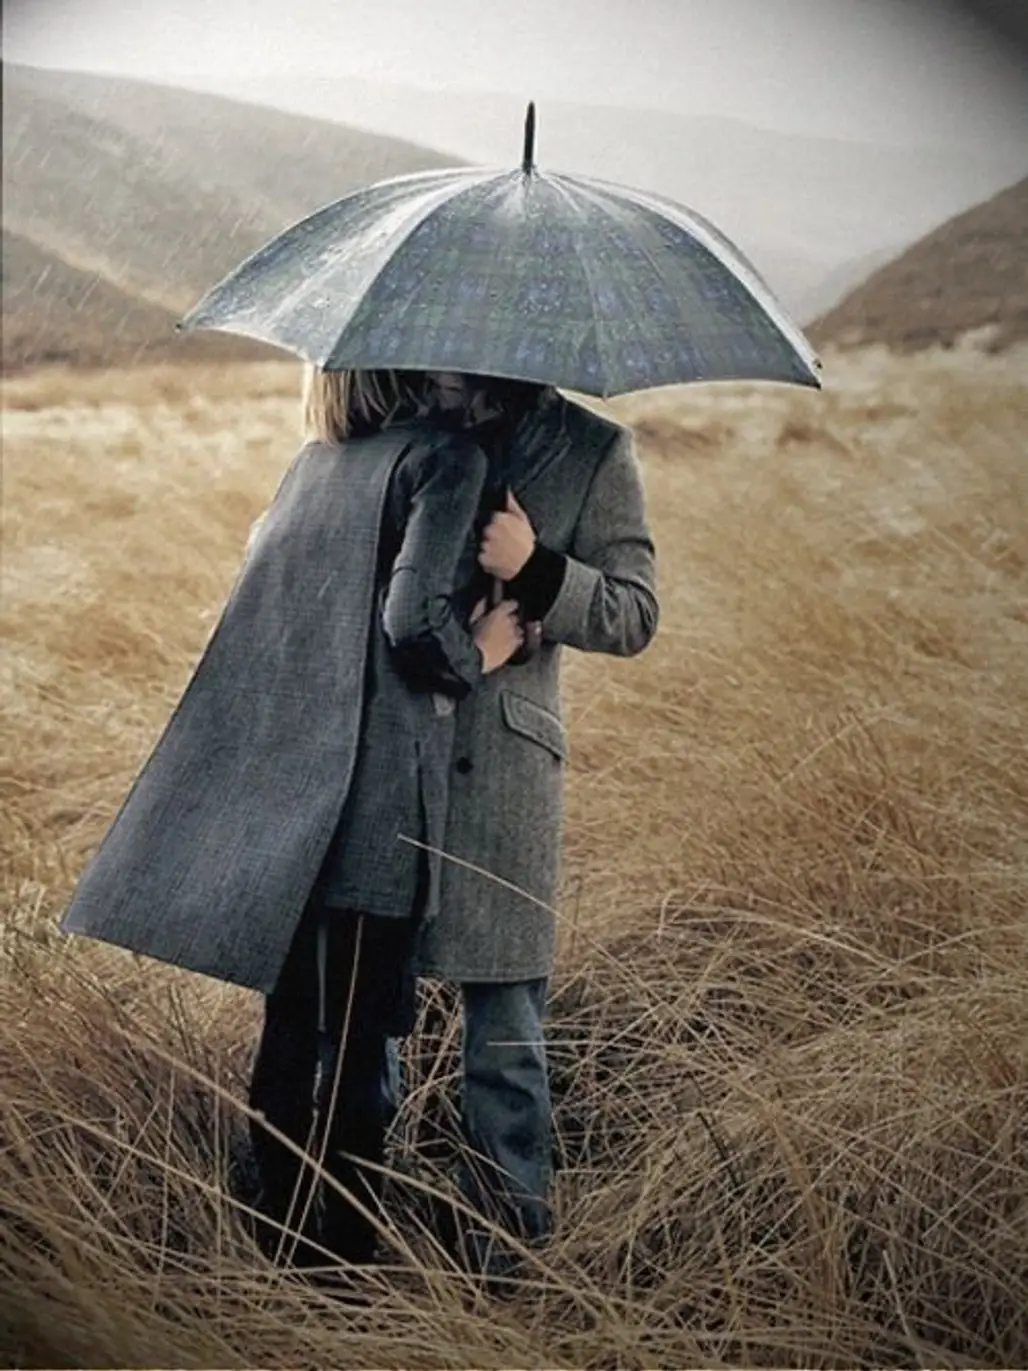 Grey Umbrella